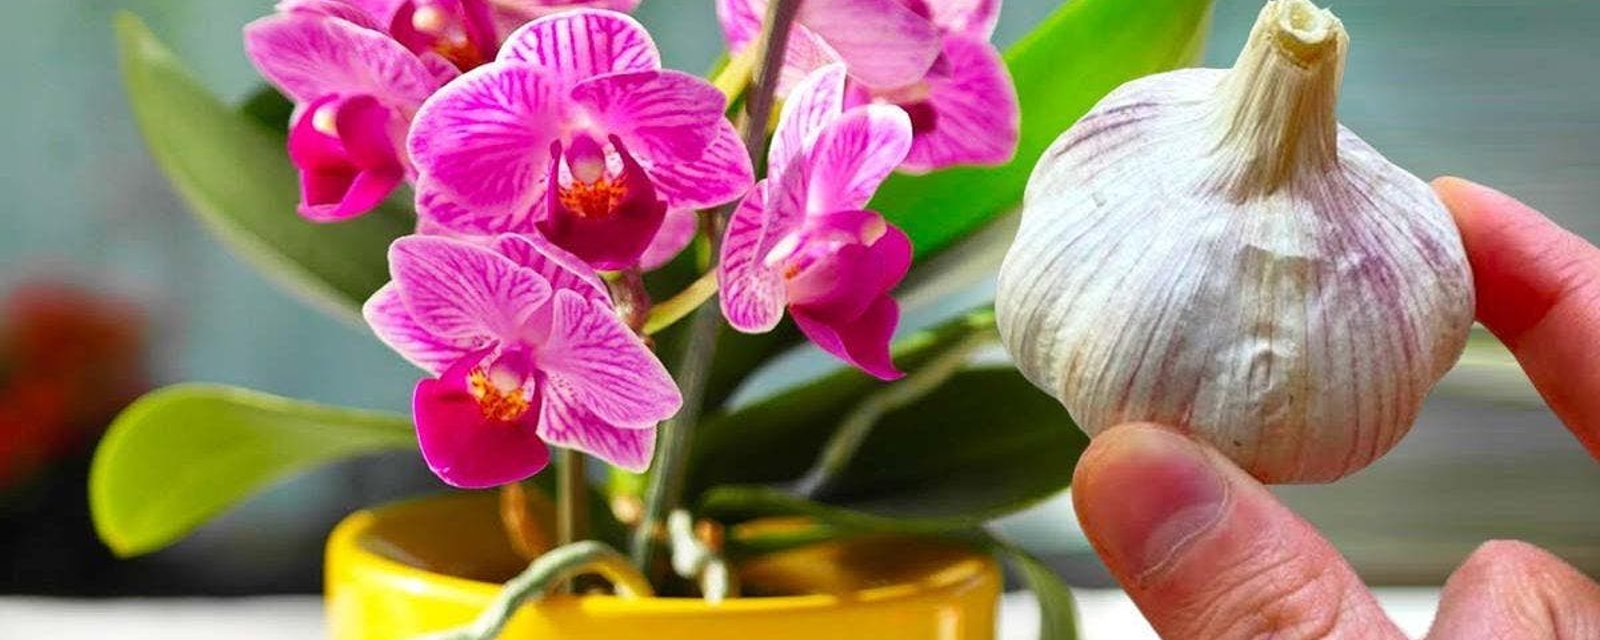 Le truc de l’ail pour faire refleurir une orchidée